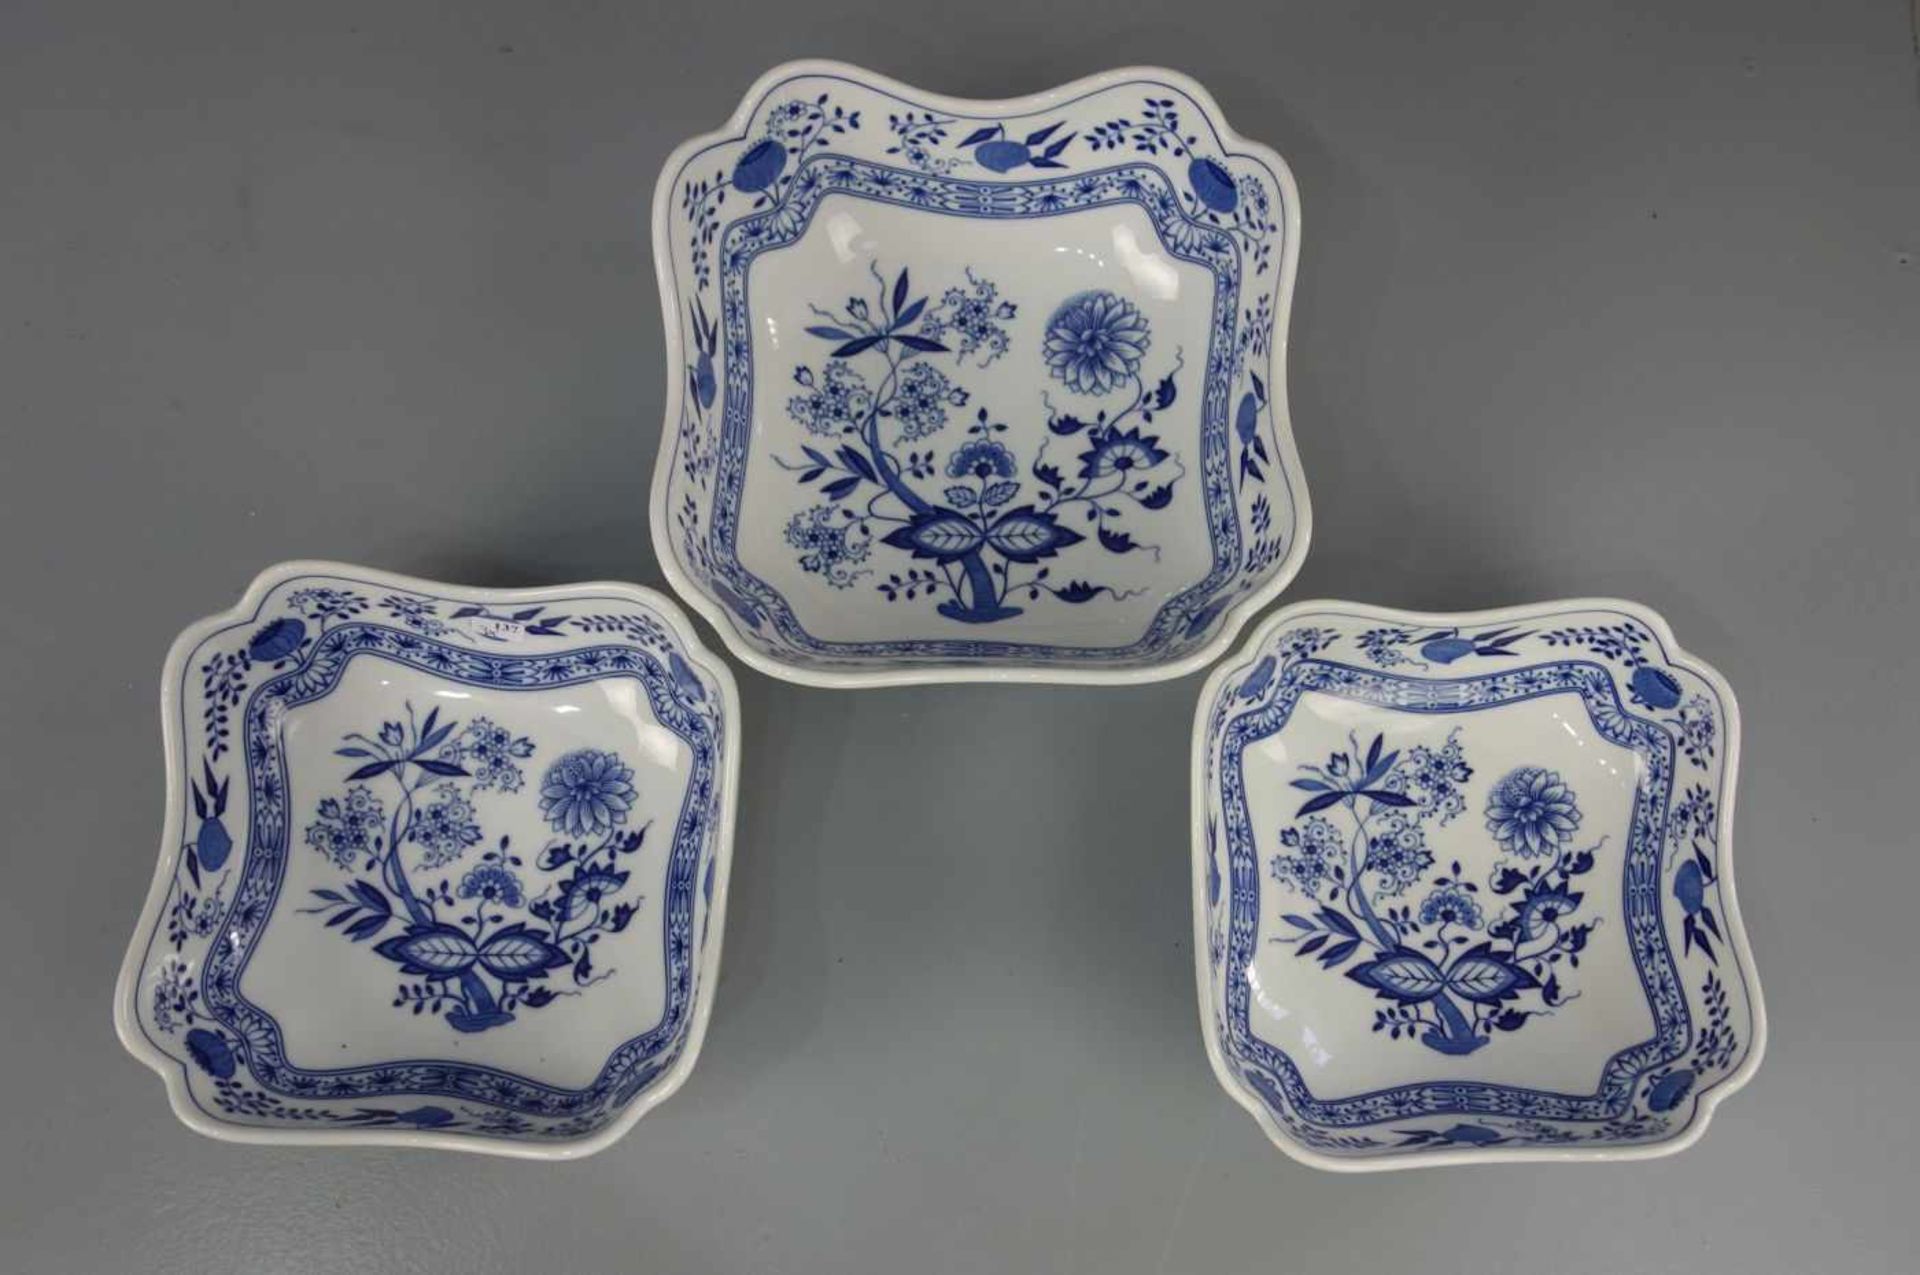 3 SCHALEN / KARREESCHALEN / porcelain bowls, Porzellan, Manufaktur Hutschenreuther, 20. Jh.;